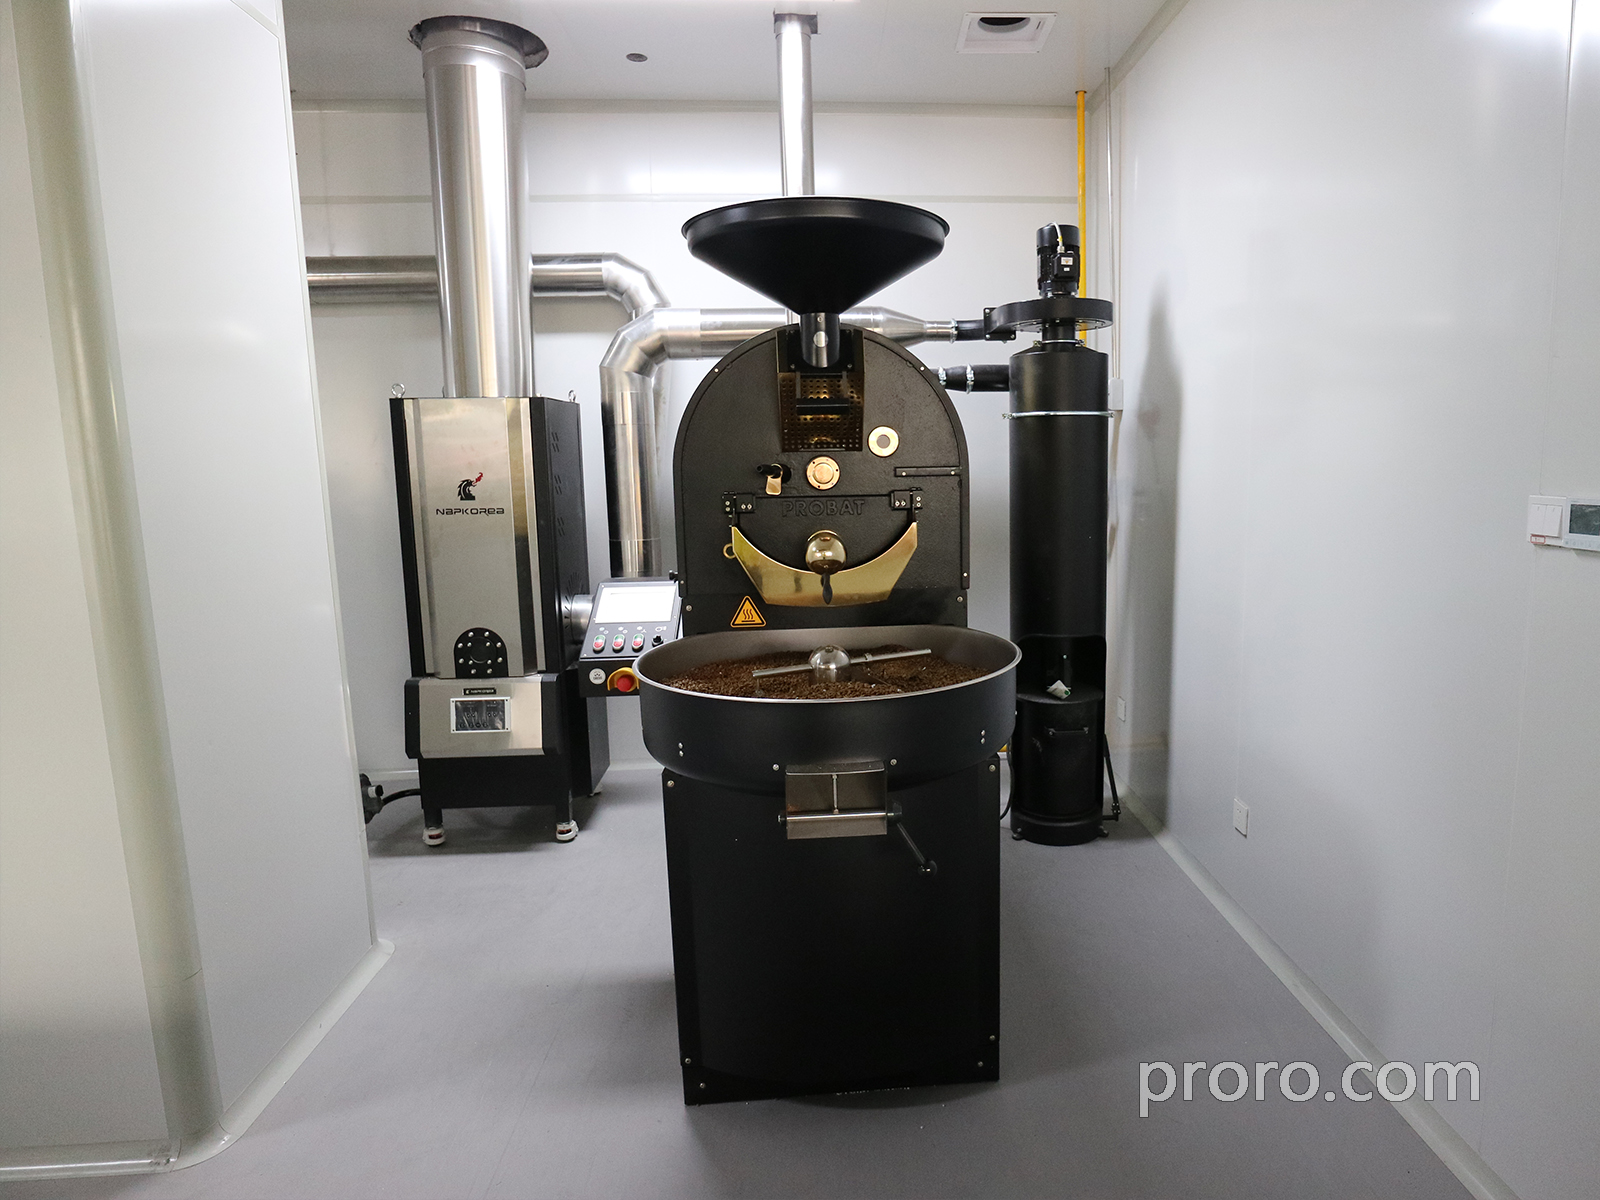  PROBAT / FUJIROYAL 富士皇家咖啡烘焙机 后燃机 安装案例 - 杭州诗瓦娜咖啡工厂店。